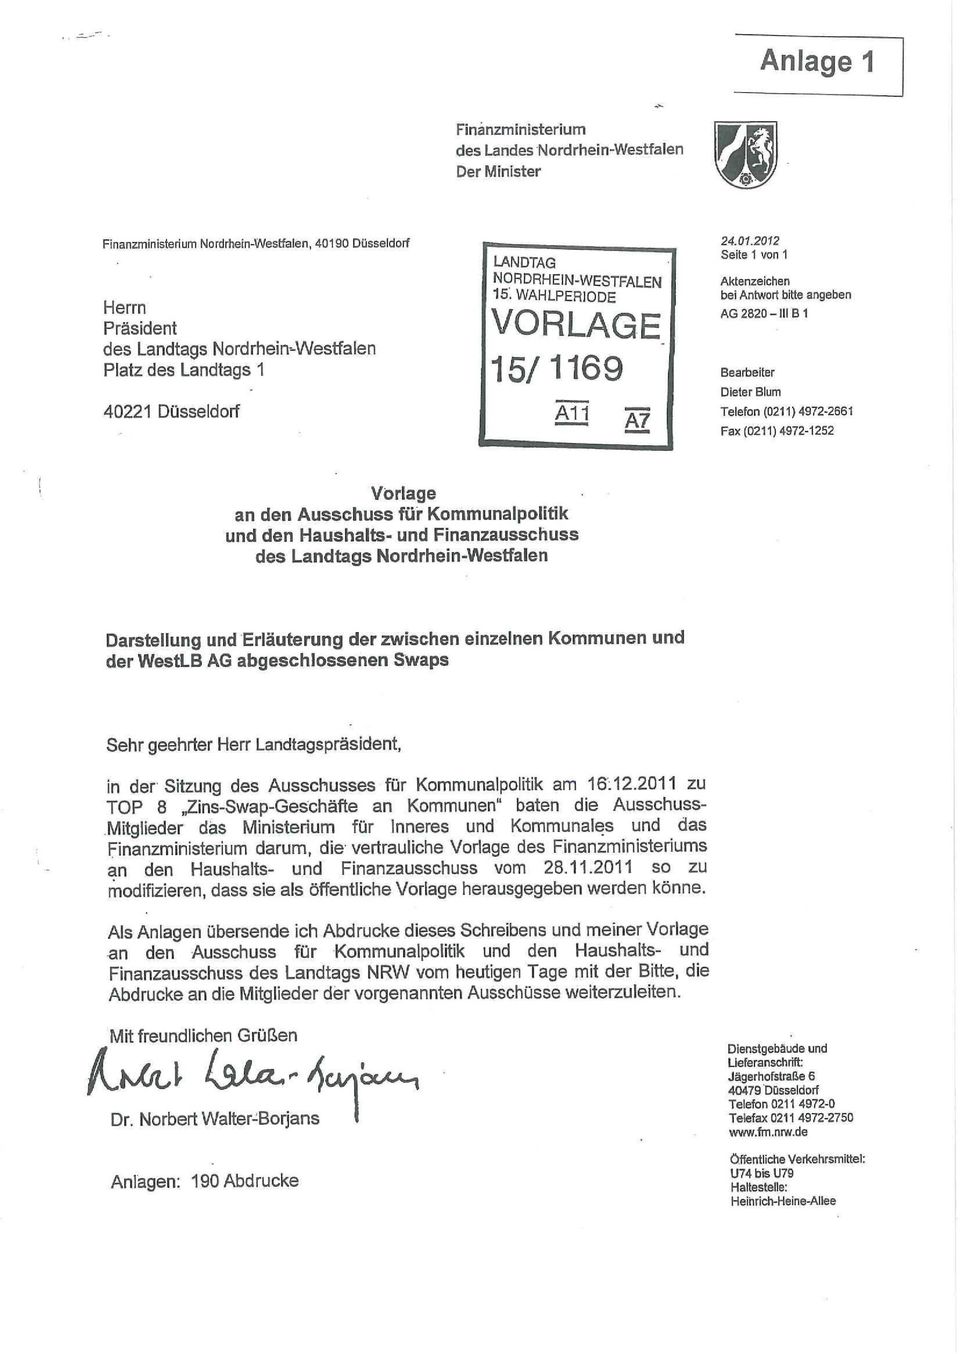 2012 Seite 1 von 1 Aktenzeichen bei Antwort bitte angeben AG 2820-III B1 Bearbeiter Dieter Blum Telefon (0211)4972-2661 Fax (0211) 4972-1252 Vorlage an den Ausschuss für Kommunalpolitik und den